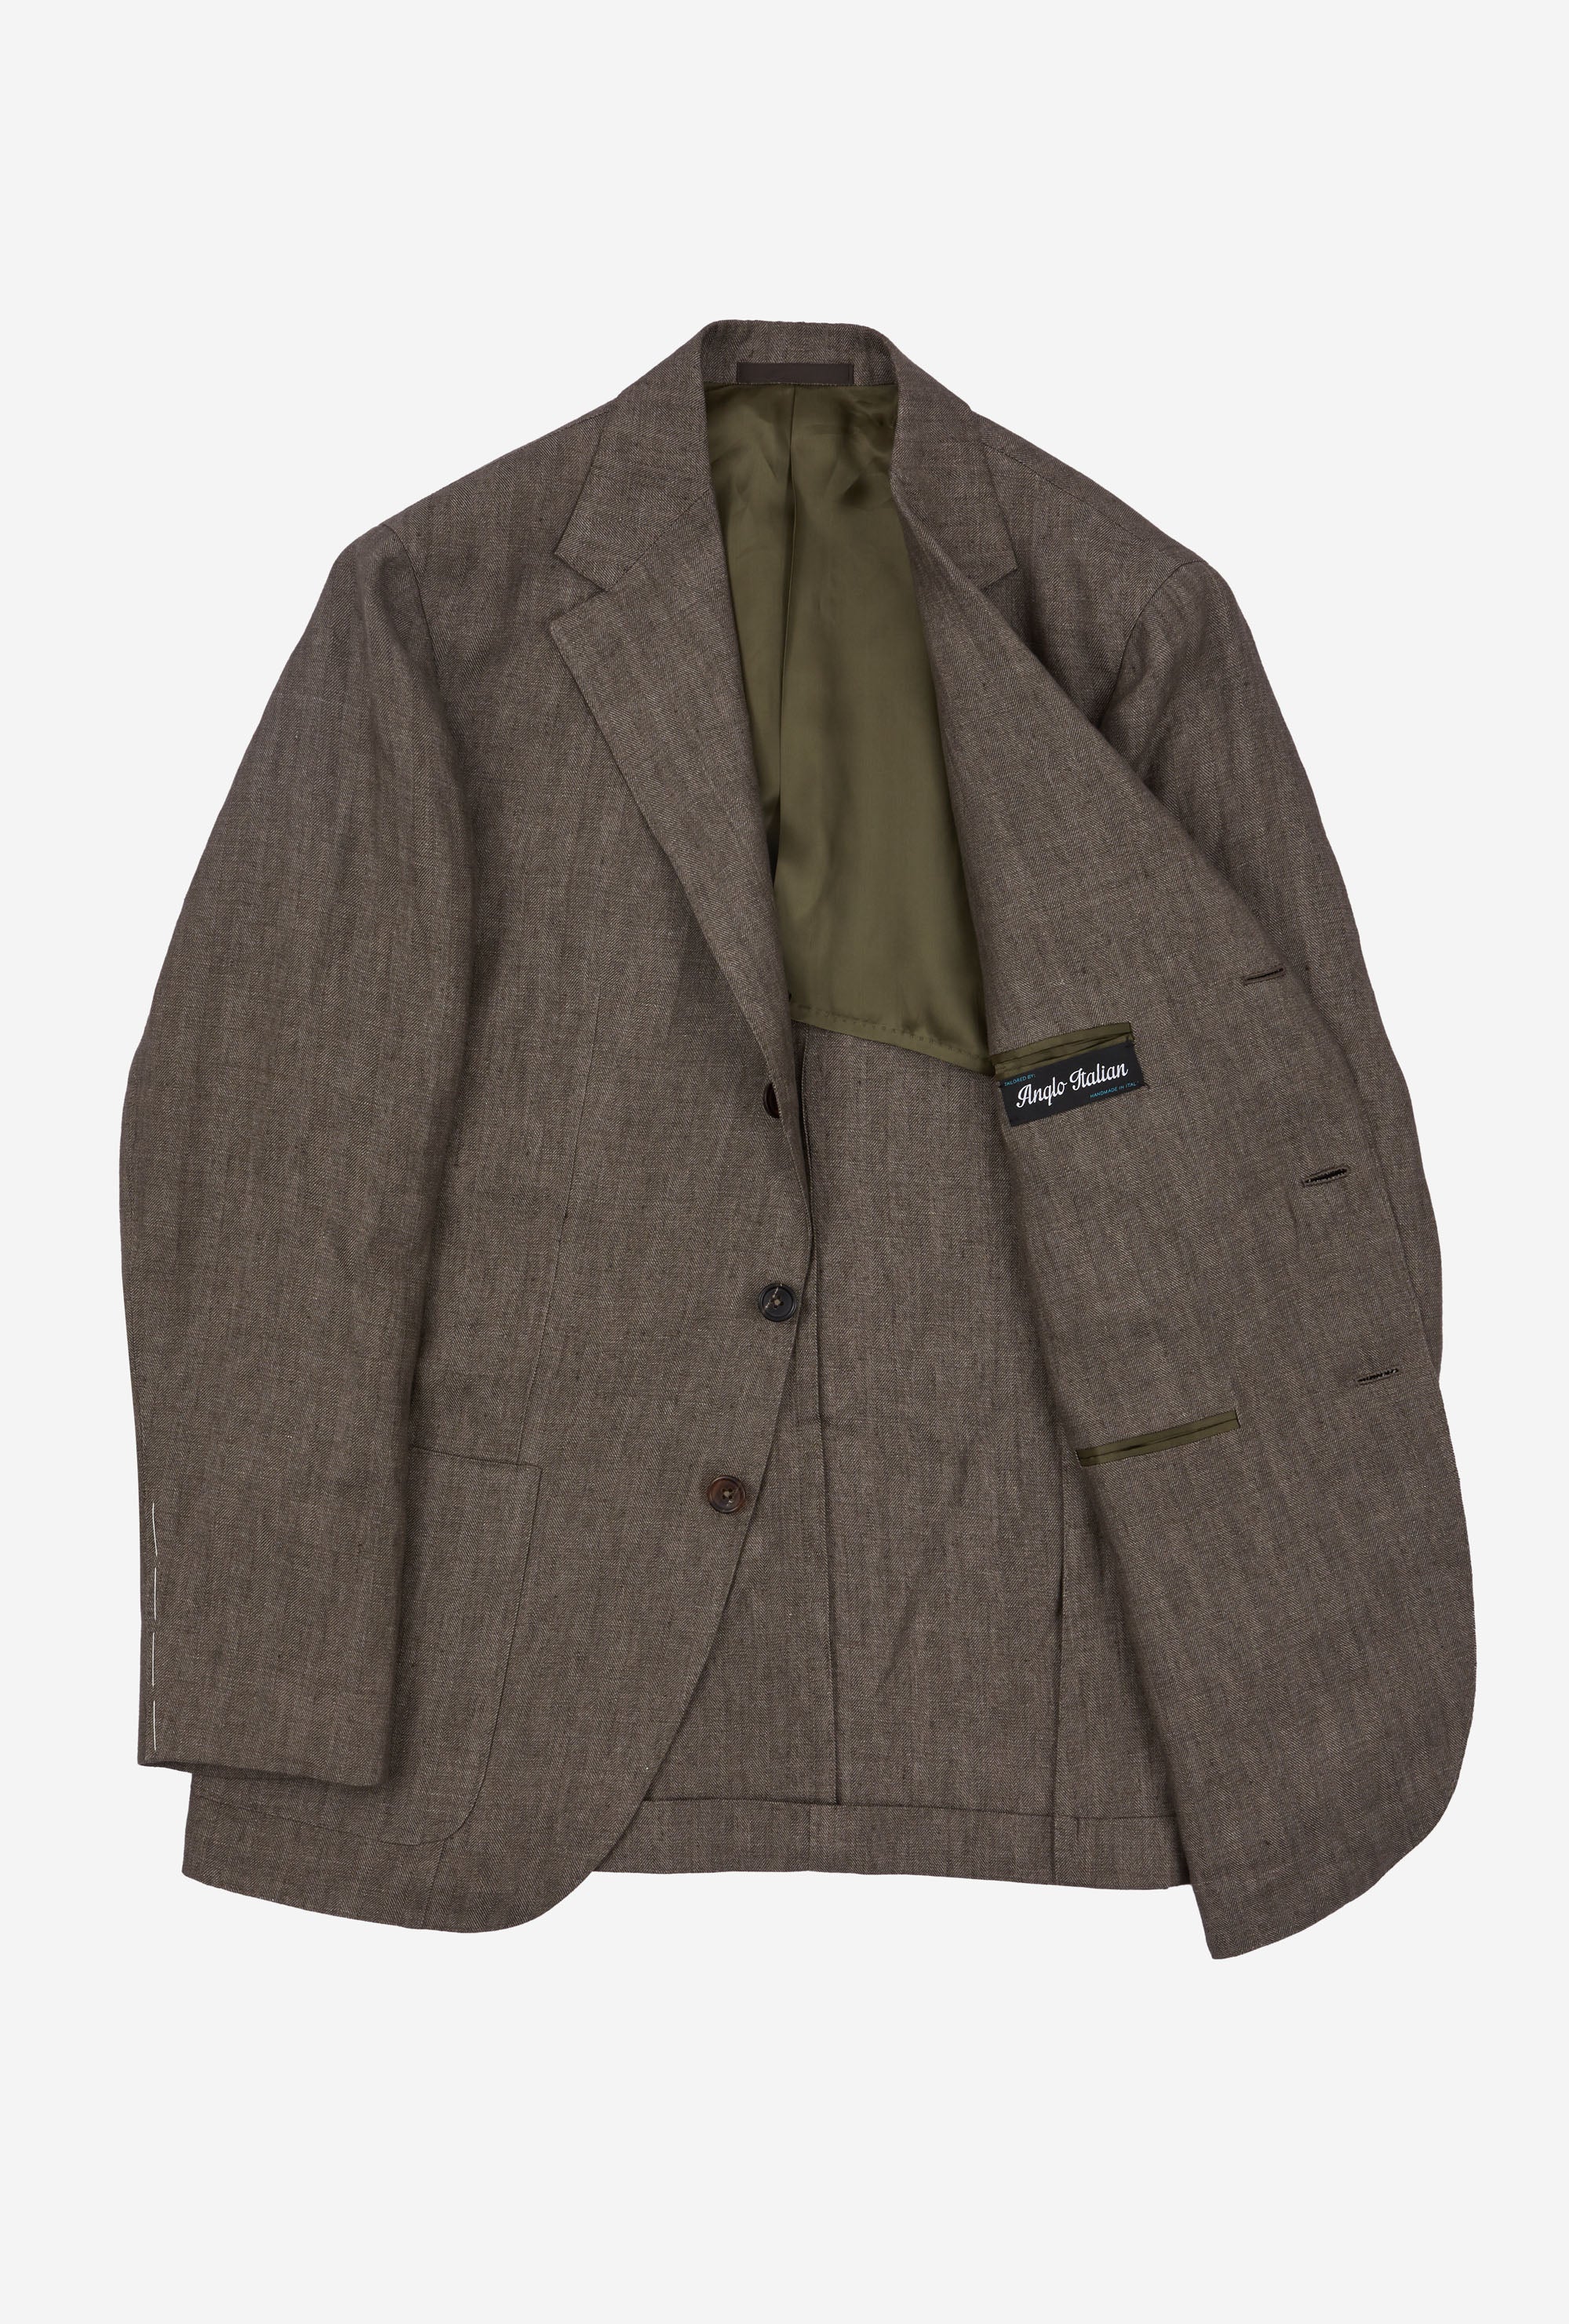 Sport Jacket Single Breasted Brown Herringbone Linen